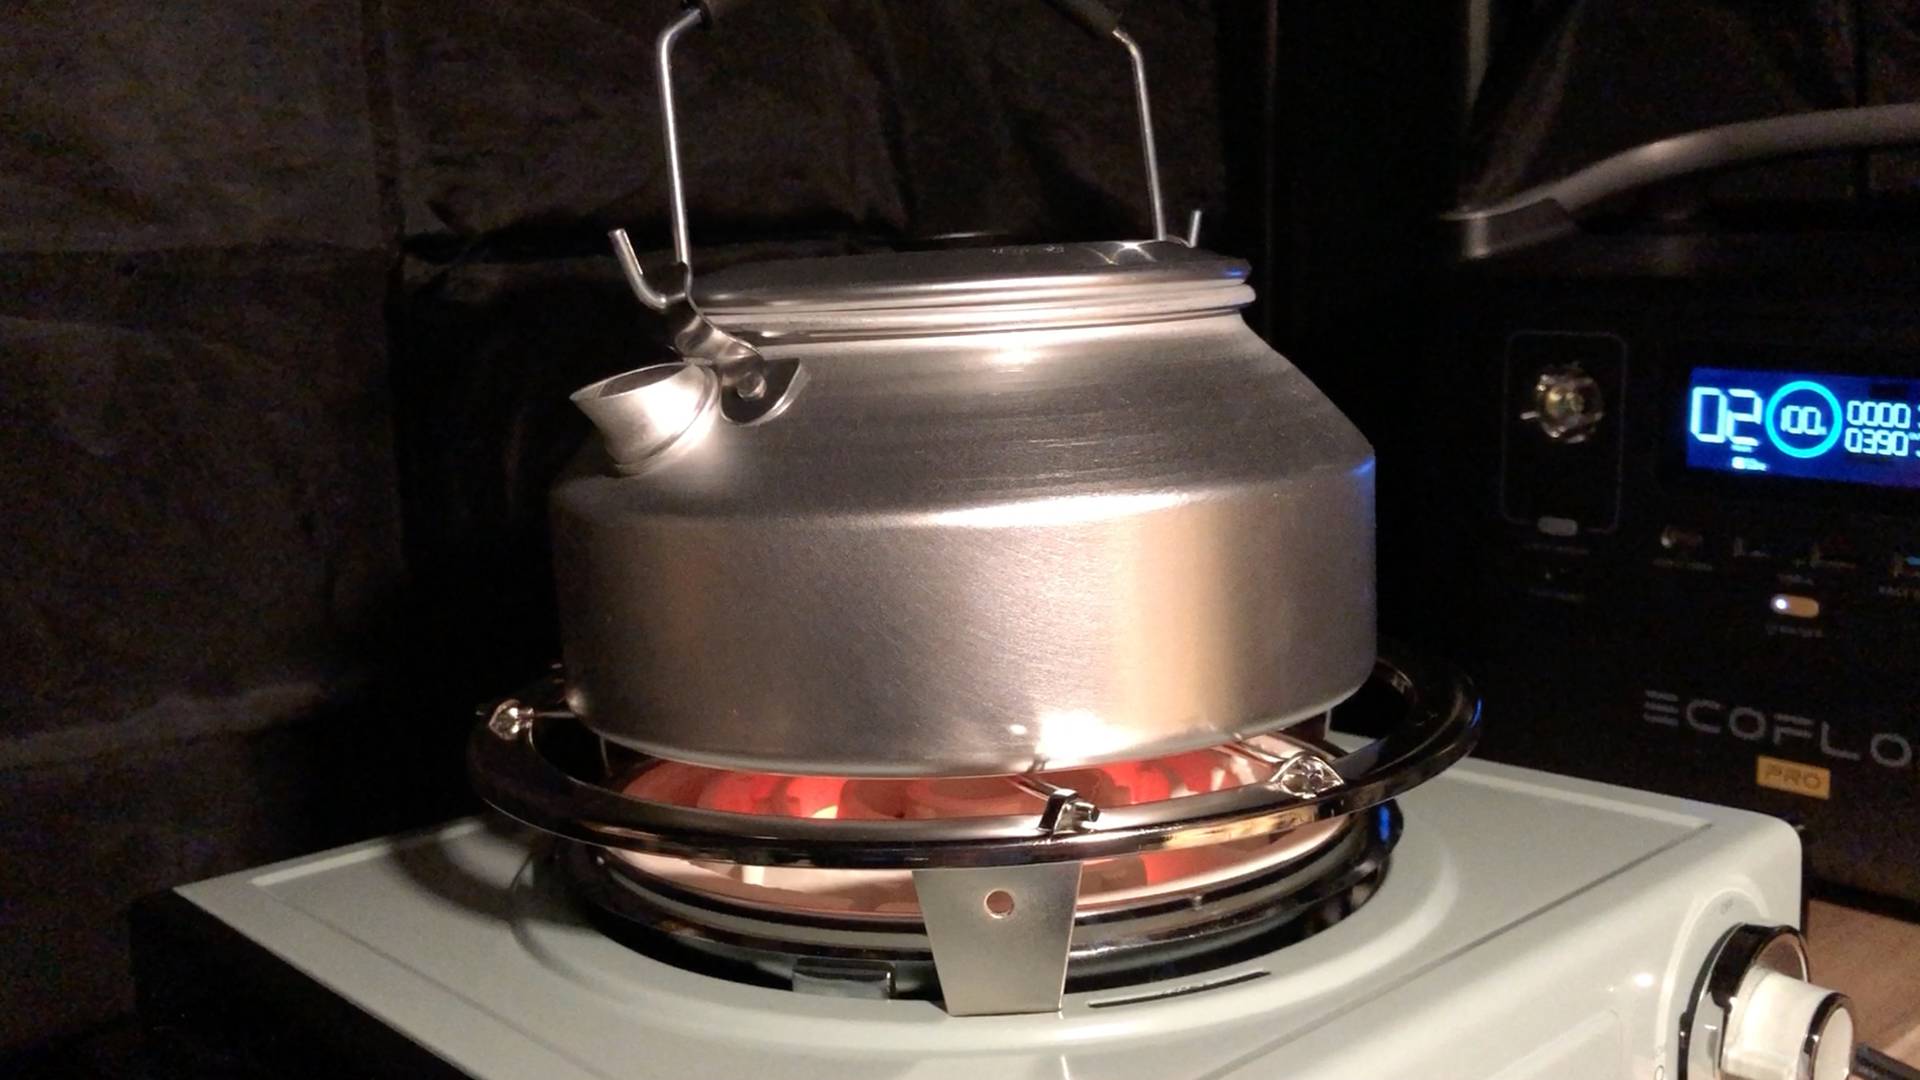 【キャンプギア】TOFFY Electric Cooktop